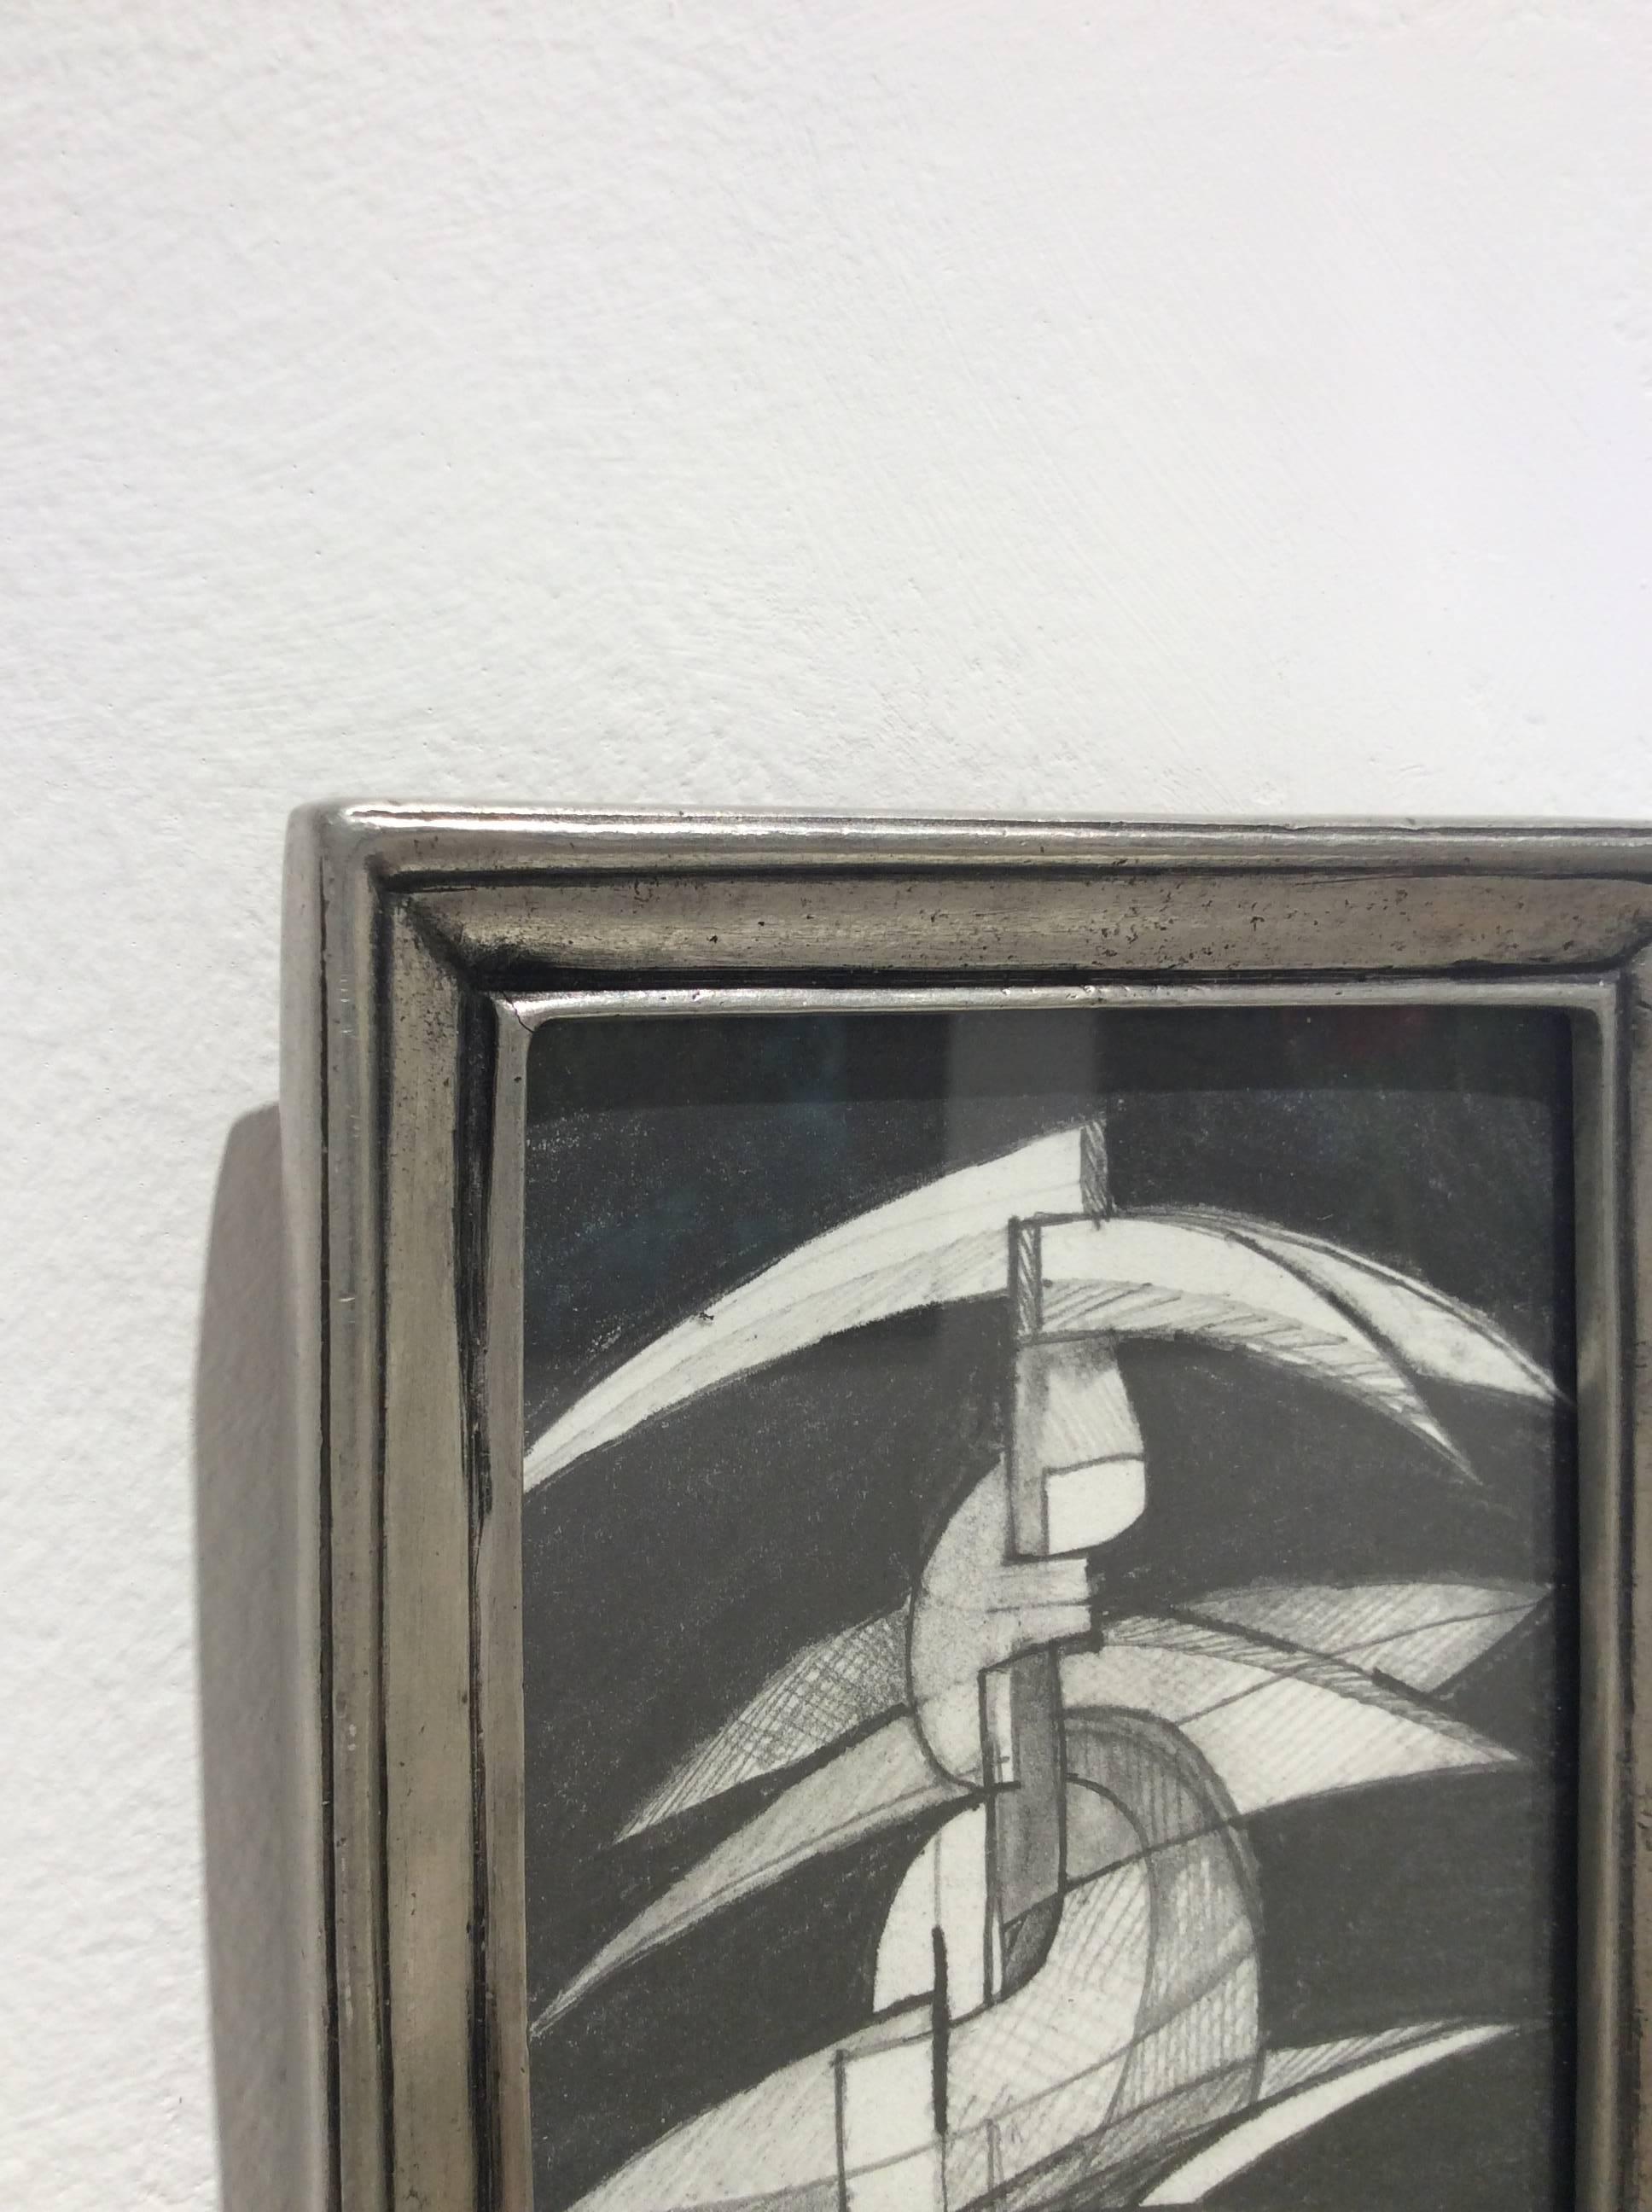 Abstrakte Graphitzeichnung auf Papier in altem Zinnrahmen
5.75 x 4,5 Zoll

Diese abstrakte, figurative Graphitzeichnung auf Papier wurde durch akademische Gemälde der Infantin Margarita inspiriert. Das Werk ist in einem abstrahierten kubistischen